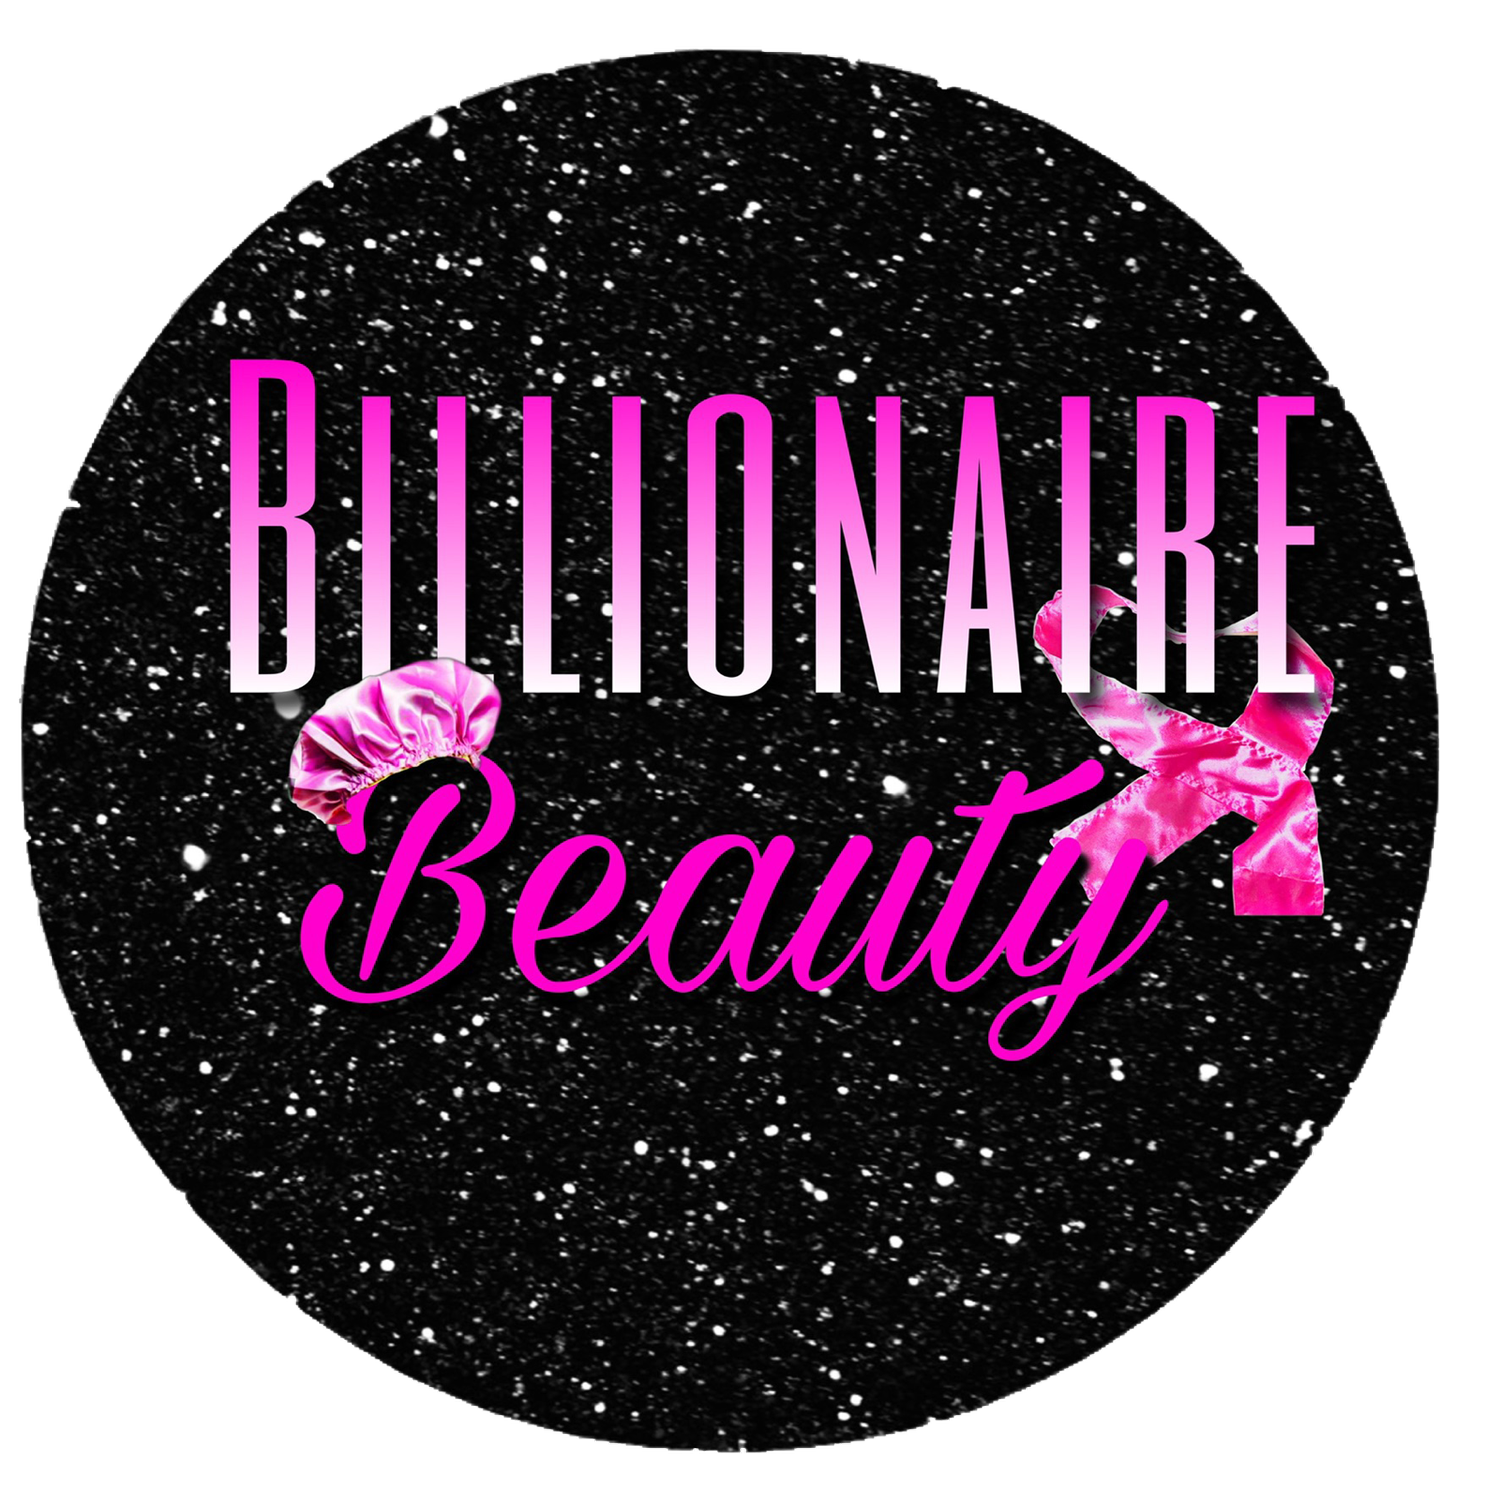 Billionaire Beauty